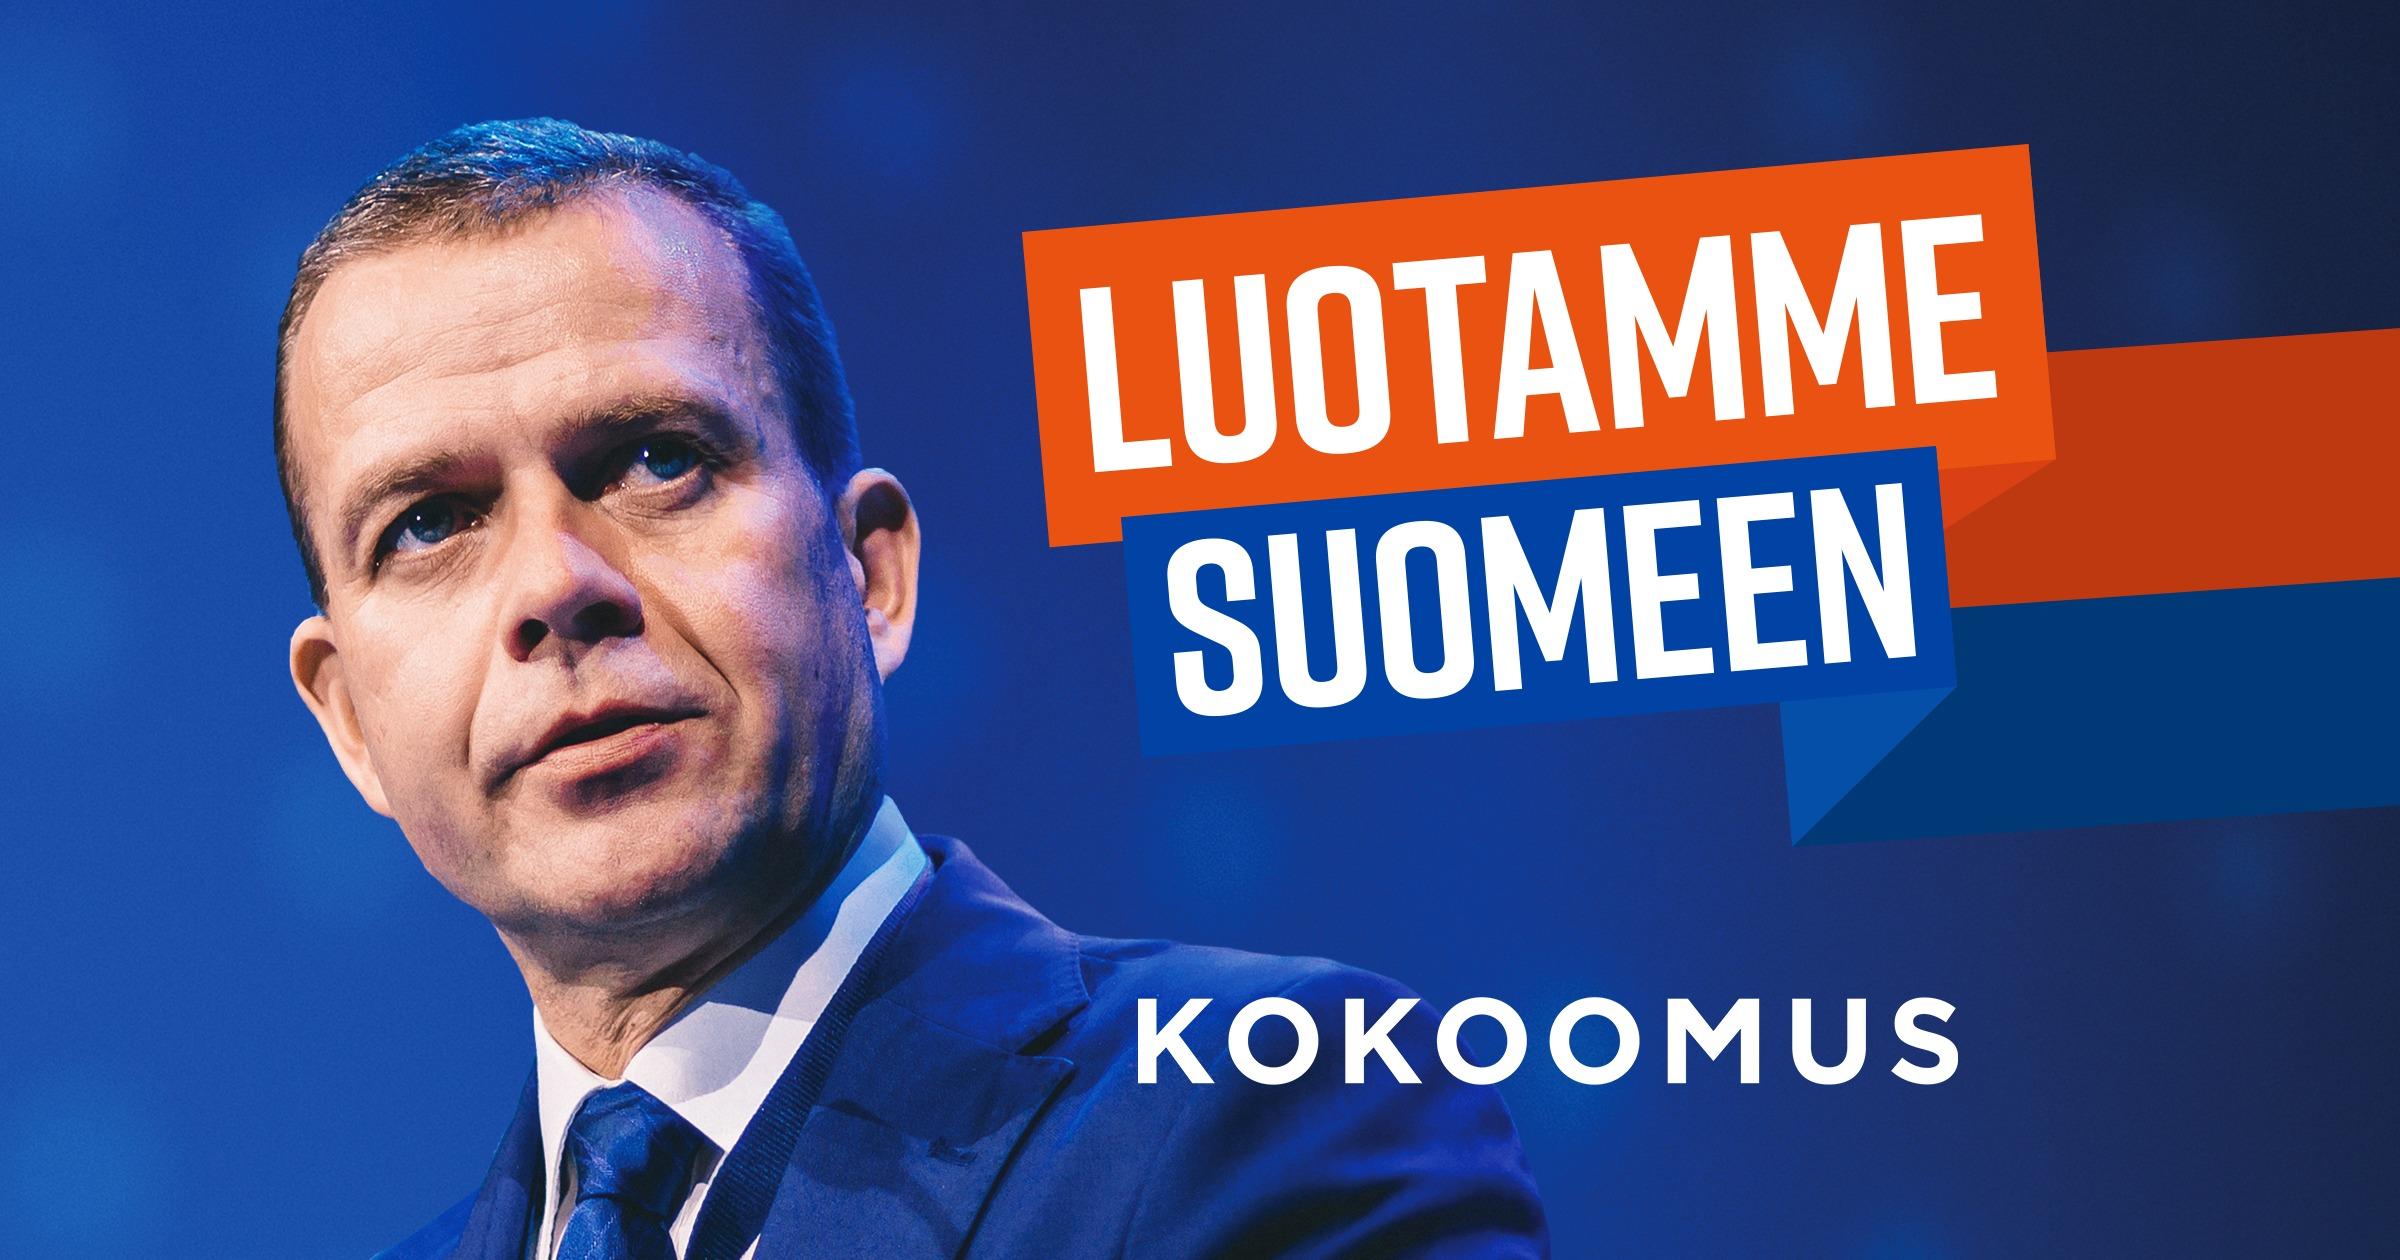 Kokoomuksen eduskuntavaaliohjelma 2019: Luotamme Suomeen – 